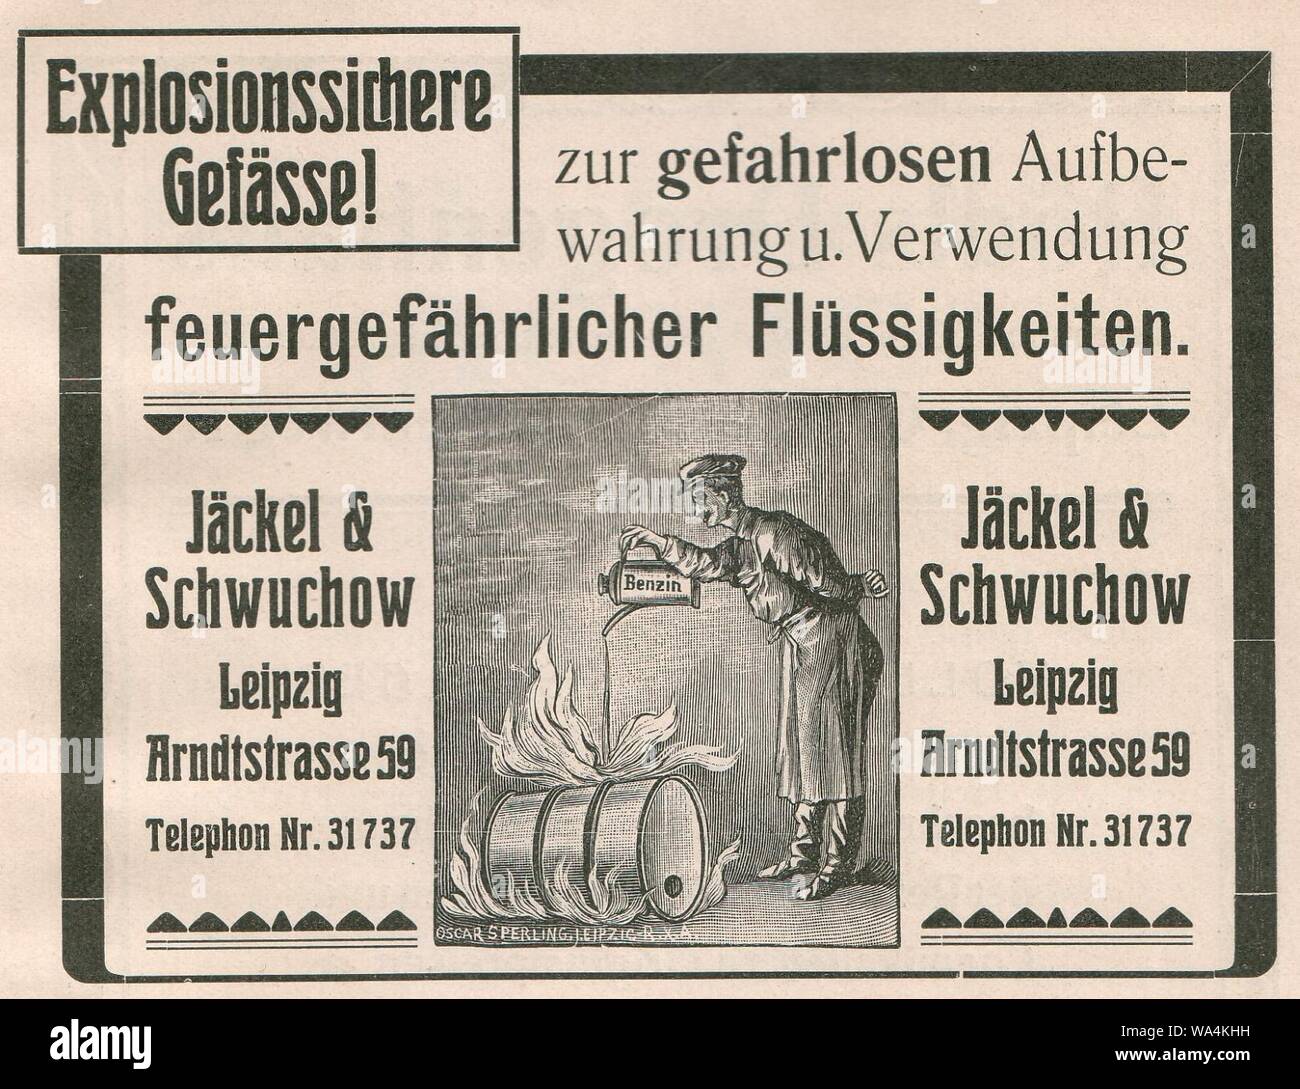 Die Kürschnerkunst, Hans Werner, 1914 (S. Anhang) Jäckel Anzeige und Schwuchow, Lipsia. Explosionssichere Gefässe. Foto Stock